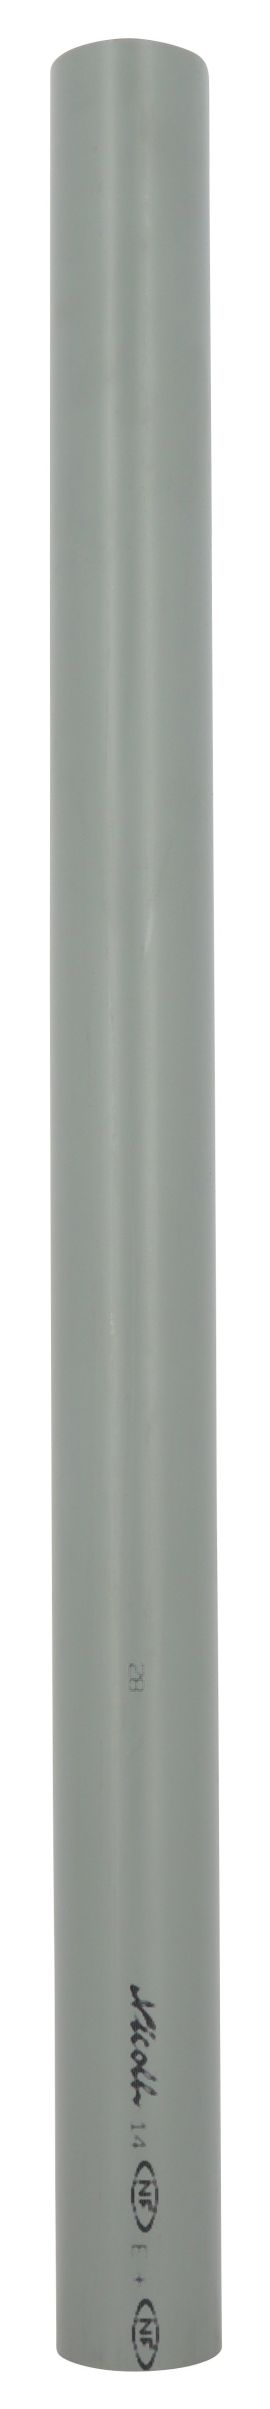 Tube d'évacuation PVC Ø 50, épaisseur 3 mm, 4 m, gris